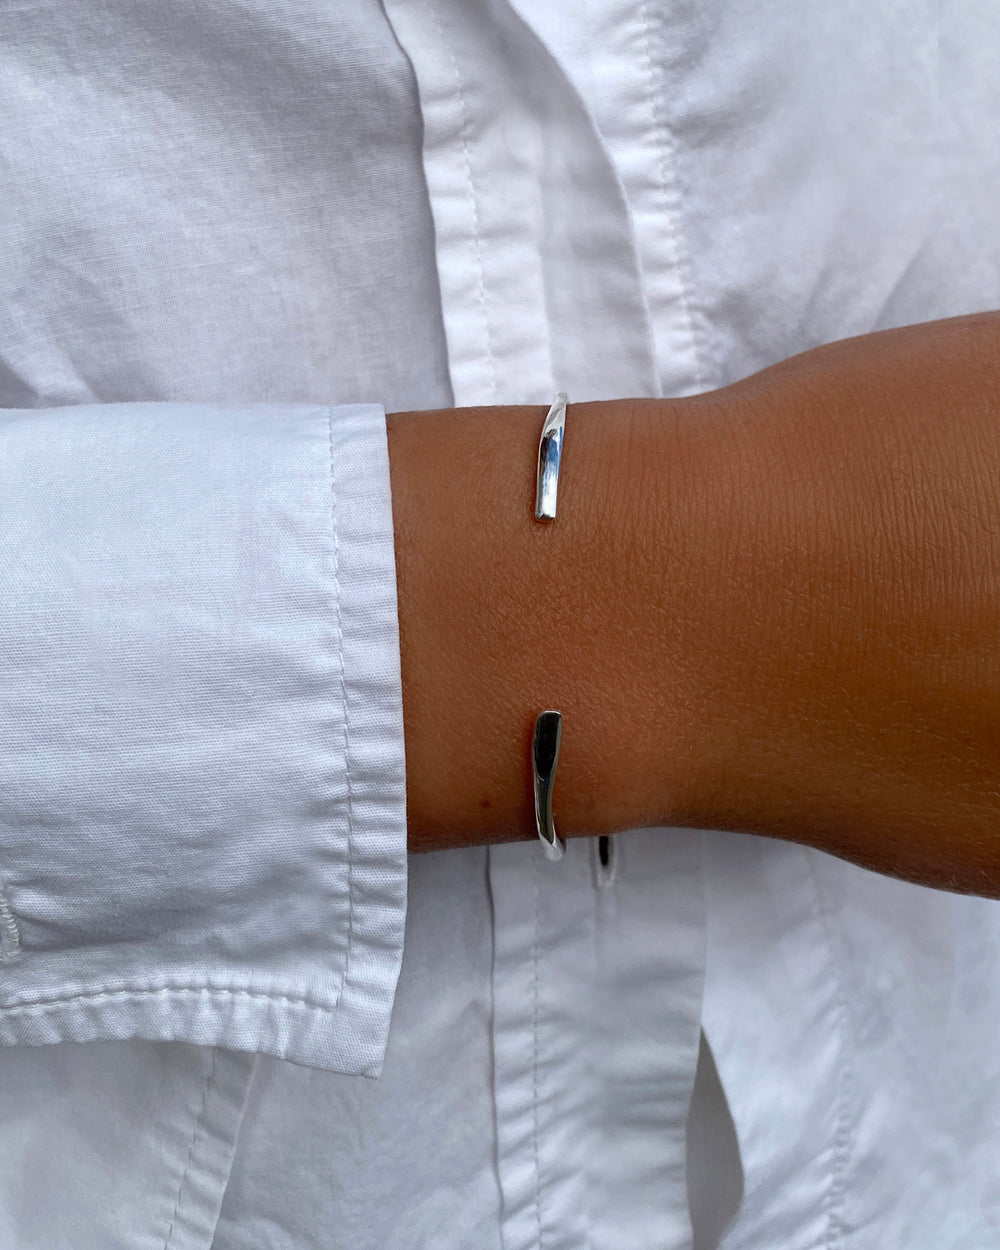 Swell Cuff Bracelet | Silver